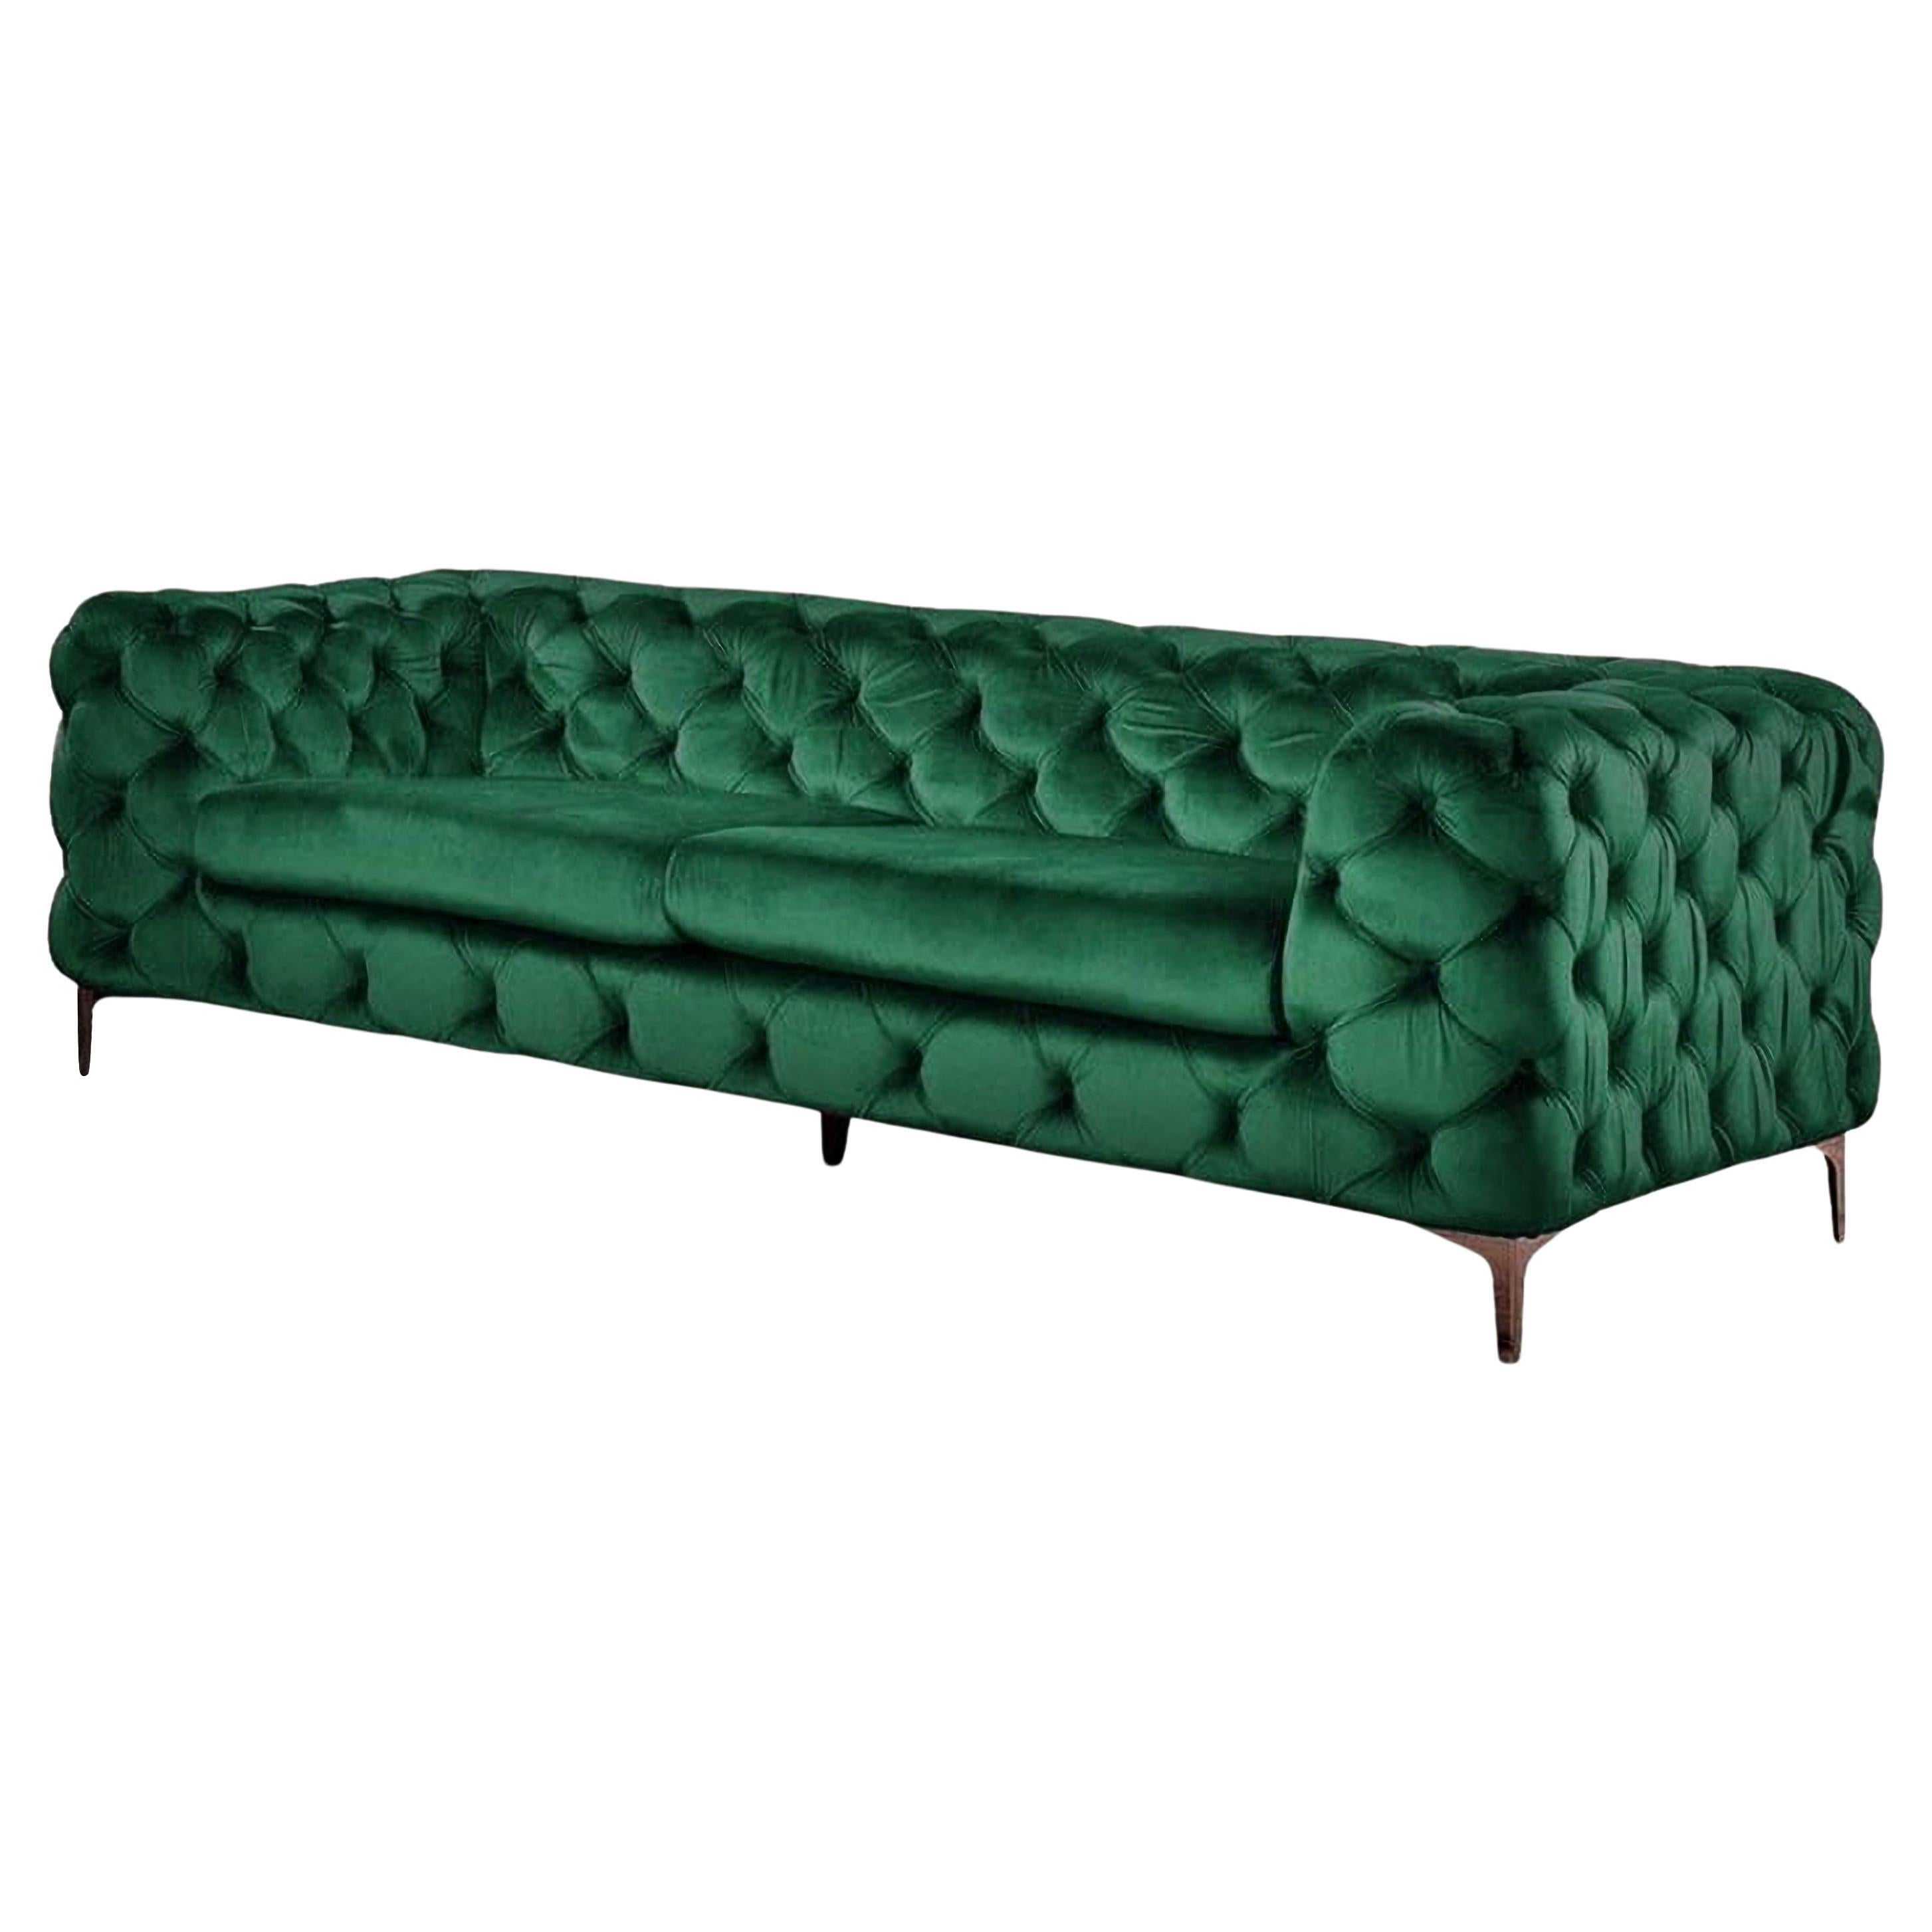 Chester 3 Seater Sofa, Green Velvet New For Sale